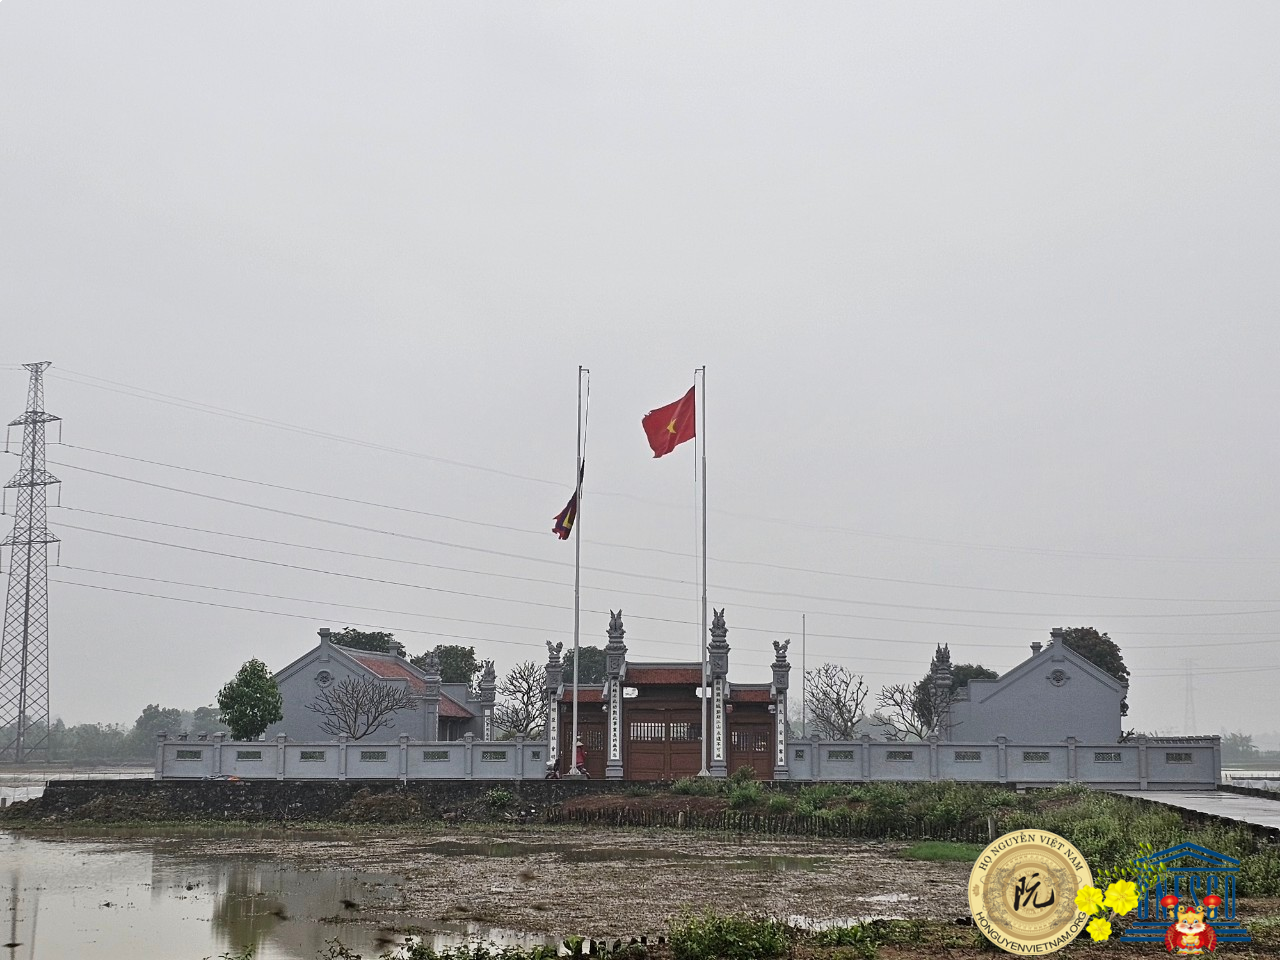 Lăng mộ của ngài Nguyễn Bặc, thủy tổ của dòng họ Nguyễn tại nhà thờ và lăng Thái tể Đinh quốc công tại xã Gia Phương, huyện Gia Viễn, tỉnh Ninh Bình.